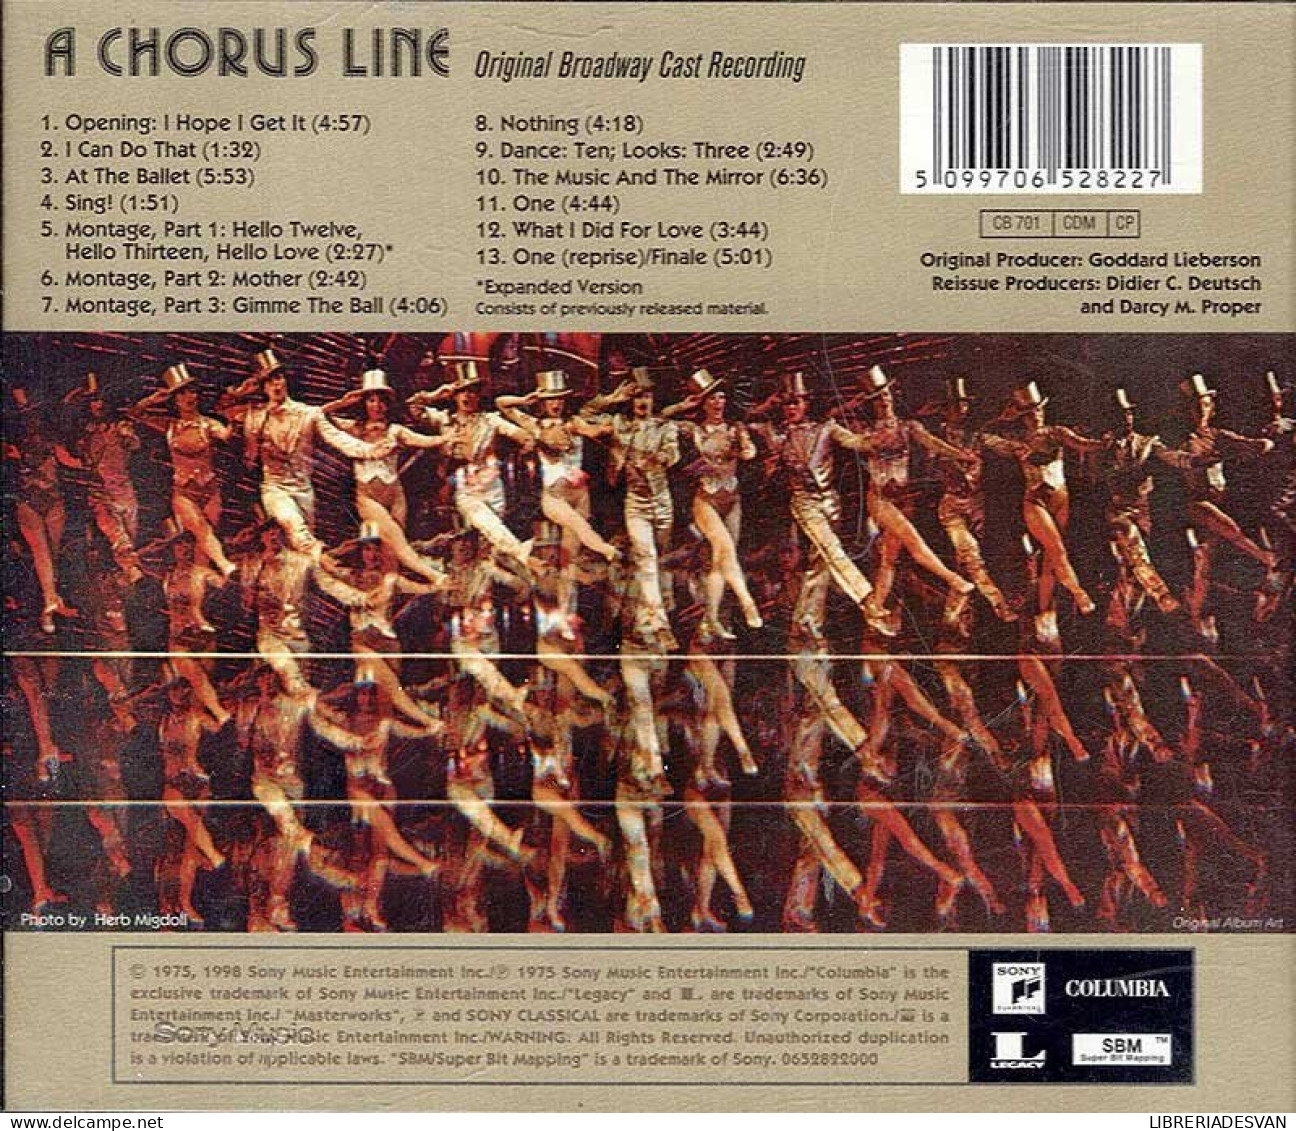 A Chorus Line - Original Broadway Cast Recording. CD - Soundtracks, Film Music